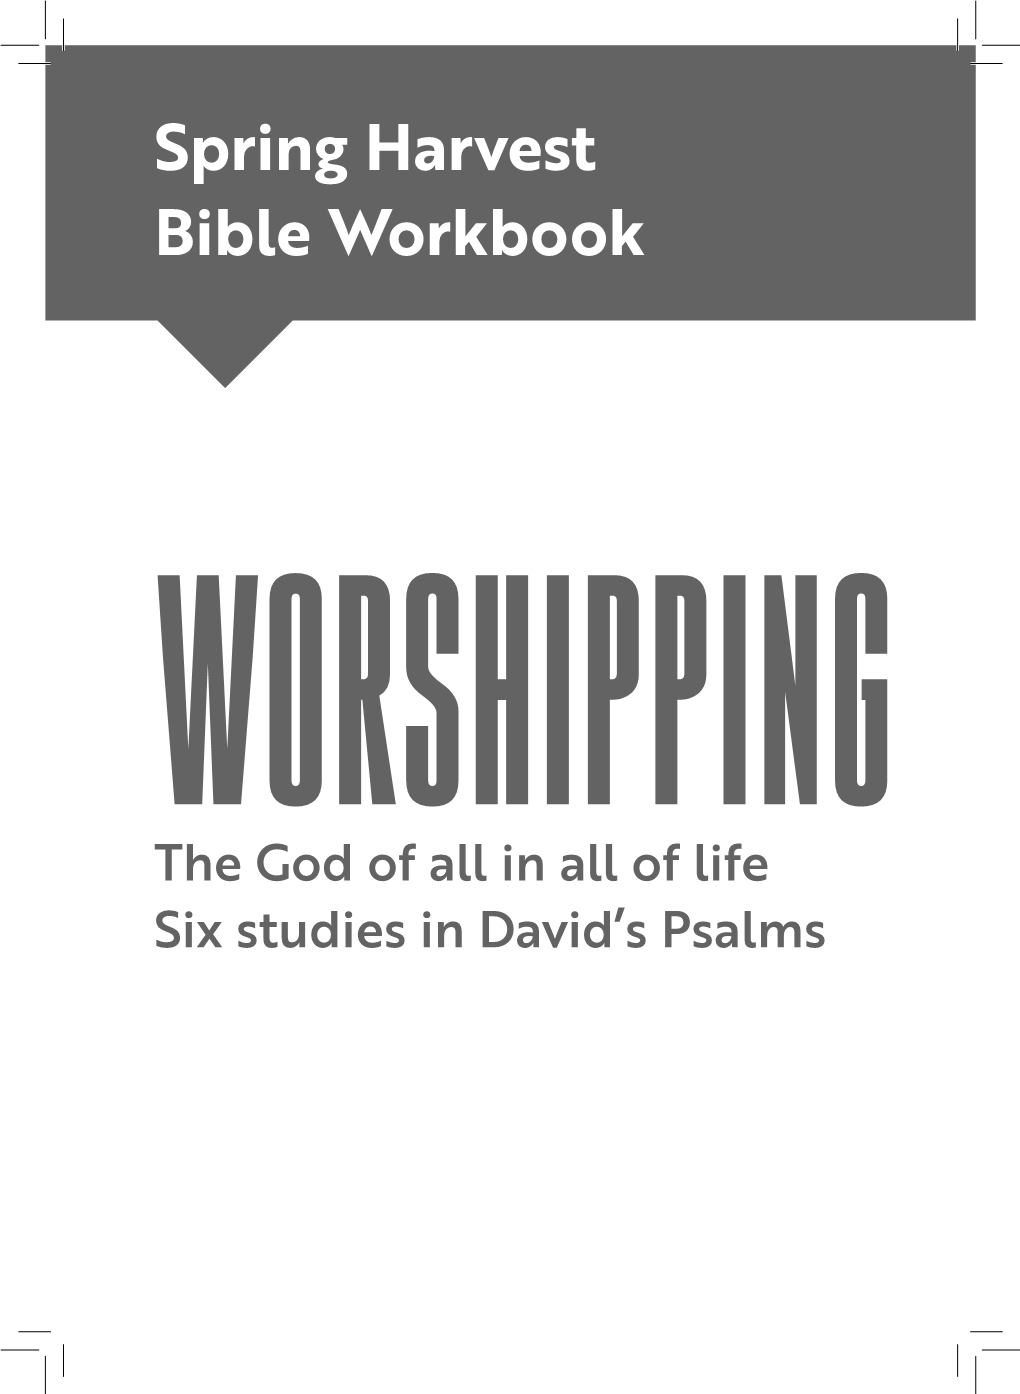 Spring Harvest Bible Workbook